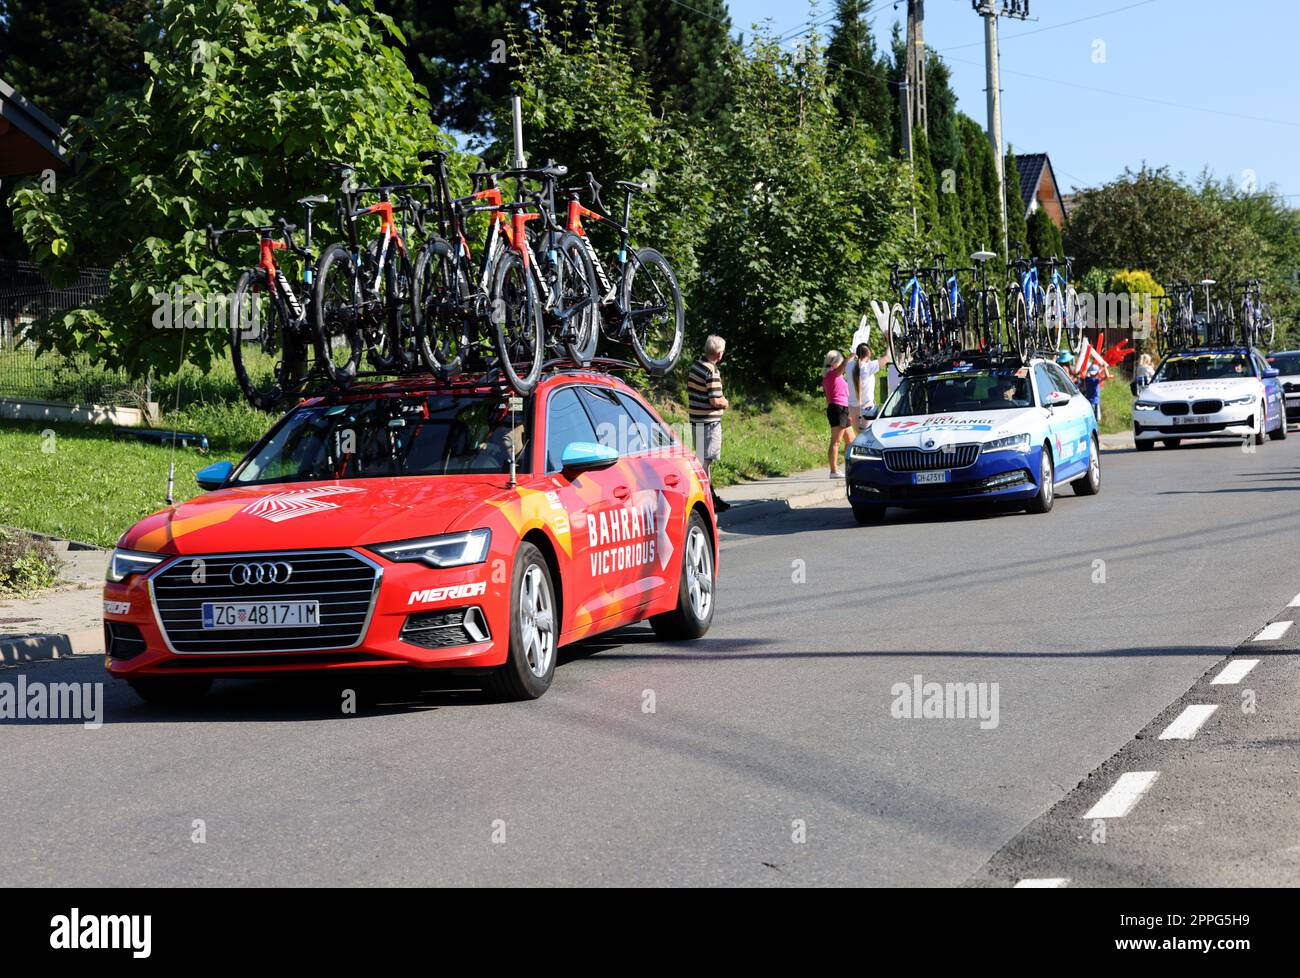 Bahrain Victorius Team Vehicle sul percorso del Tour de Pologne UCI â€“ World Tour, tappa 7 Skawina - Cracovia. Foto Stock